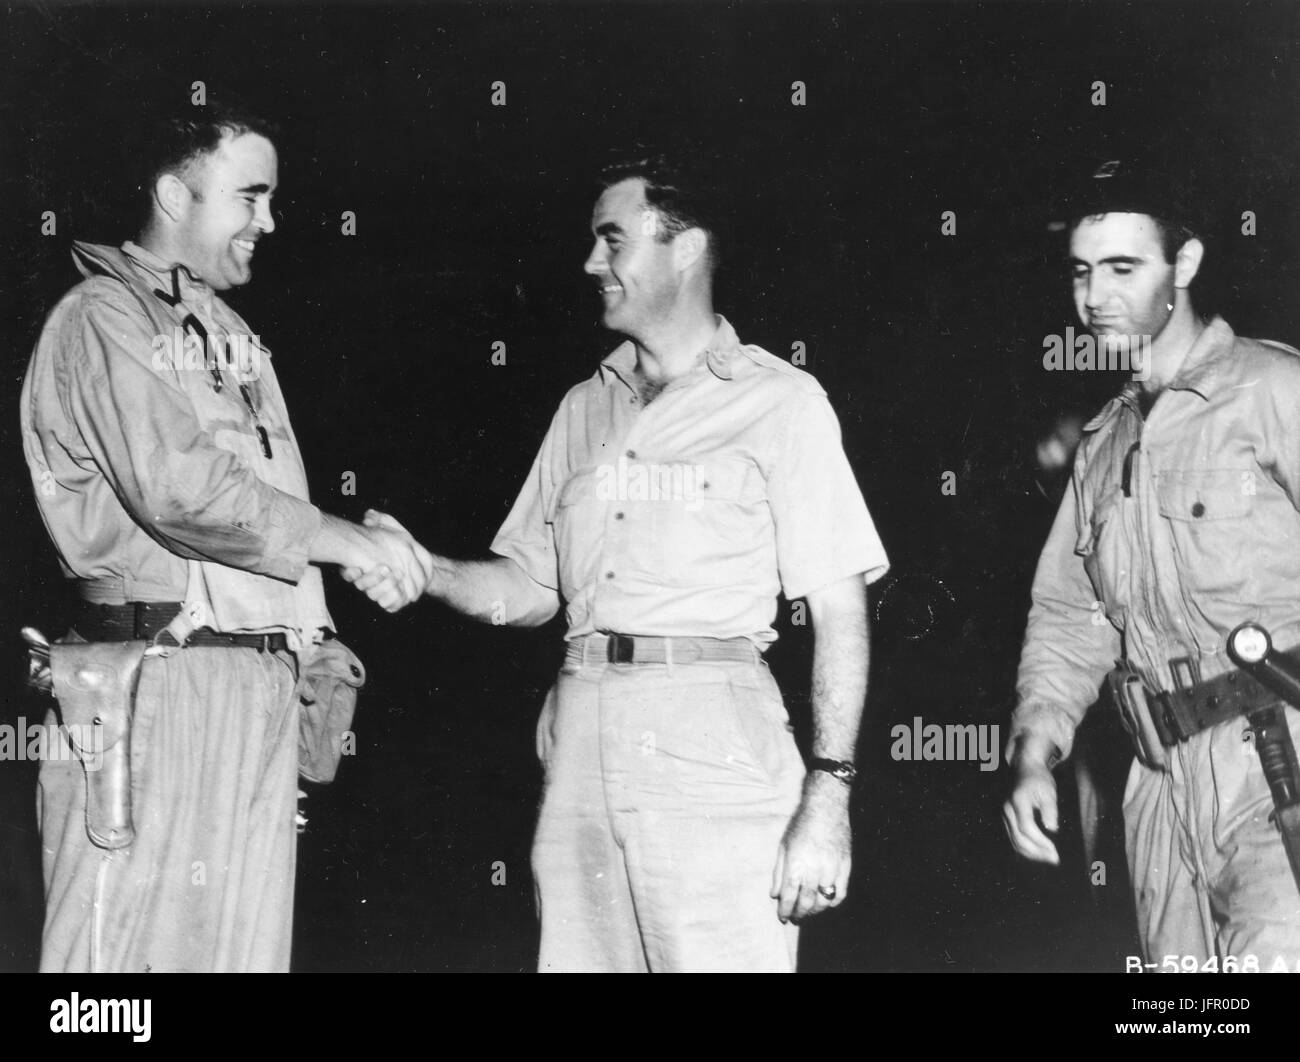 Le Major Charles W. Sweeney (à gauche), pilote du B-29 BOCKSCAR qui a laissé tomber la bombe atomique sur Nagasaki le 9 août 1945, s'affiche avant que sa mission se serrer la main avec le colonel Paul Tibbets W., pilote de l'Enola Gay qui atom bombardé Hiroshima le 6 août 1945. L'homme à la droite est le capitaine James Van Pelt, navigator pour le Major Sweeney. Tinos, le 9 août 1945 Banque D'Images